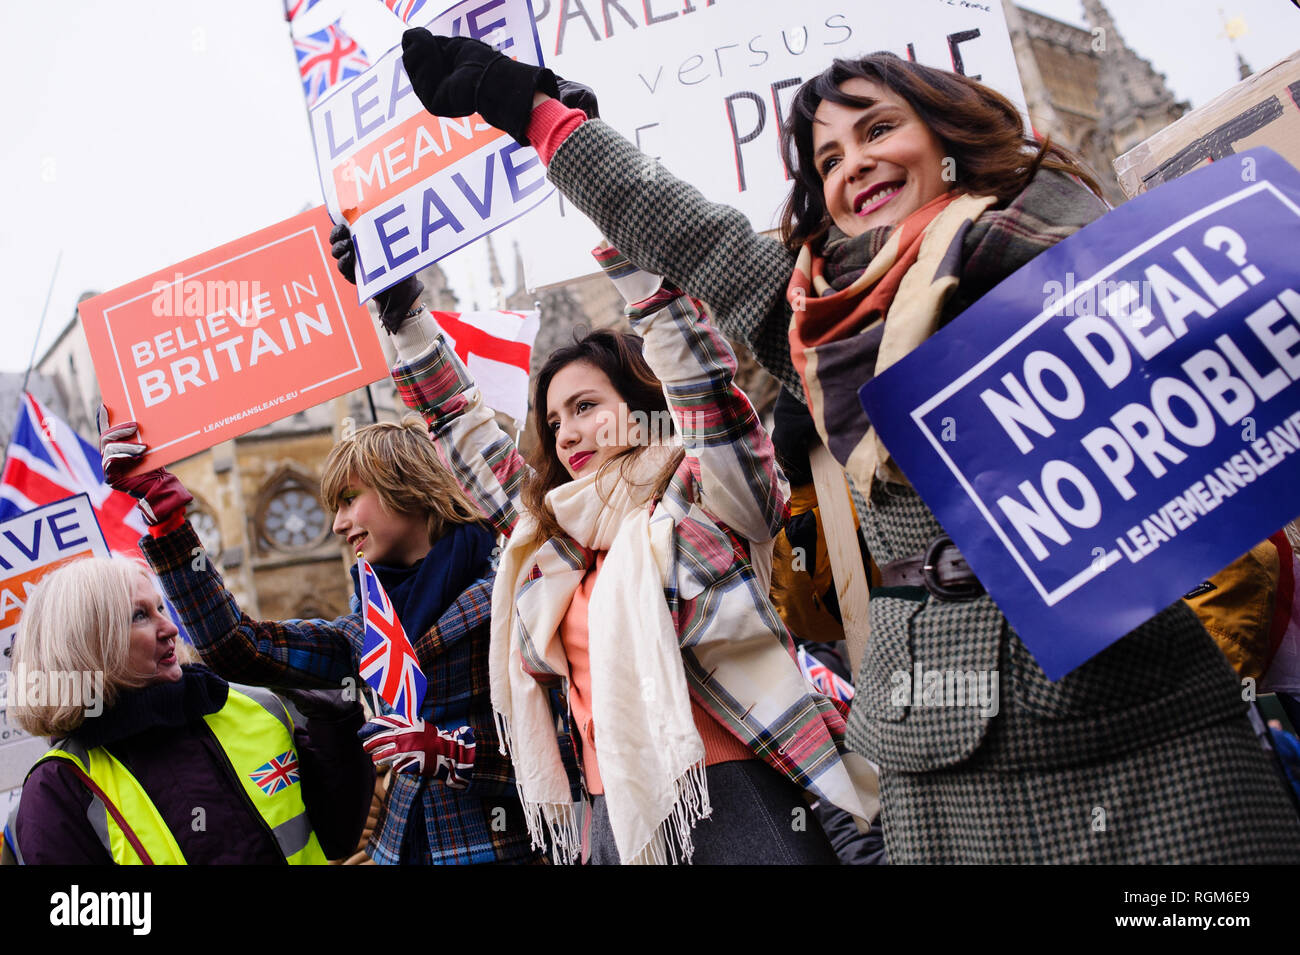 Frauen, die pro-Brexit Plakate außerhalb der Häuser des Parlaments in London demonstrieren. In der Commons, an einem Tag, der wichtige parlamentarische Aktivität über Brexit, MPs gestimmt, eine interfraktionelle Änderungsantrag von Labour Party MP Yvette Cooper und Konservative Partei MP Nick Baumstämme entwickelt, um das Risiko der gefürchteten 'no-deal Ausgang aus der EU erheblich reduzieren. Einen Antrag auf Ablehnung des Prinzips einer Nicht-deal Ausfahrt wurde in der Zwischenzeit genehmigt, so war ein von der Regierung unterstützte Änderungsantrag von Konservativen Partei MP Graham Brady verfochten, die 'alternative' an den Ort o Stockfoto